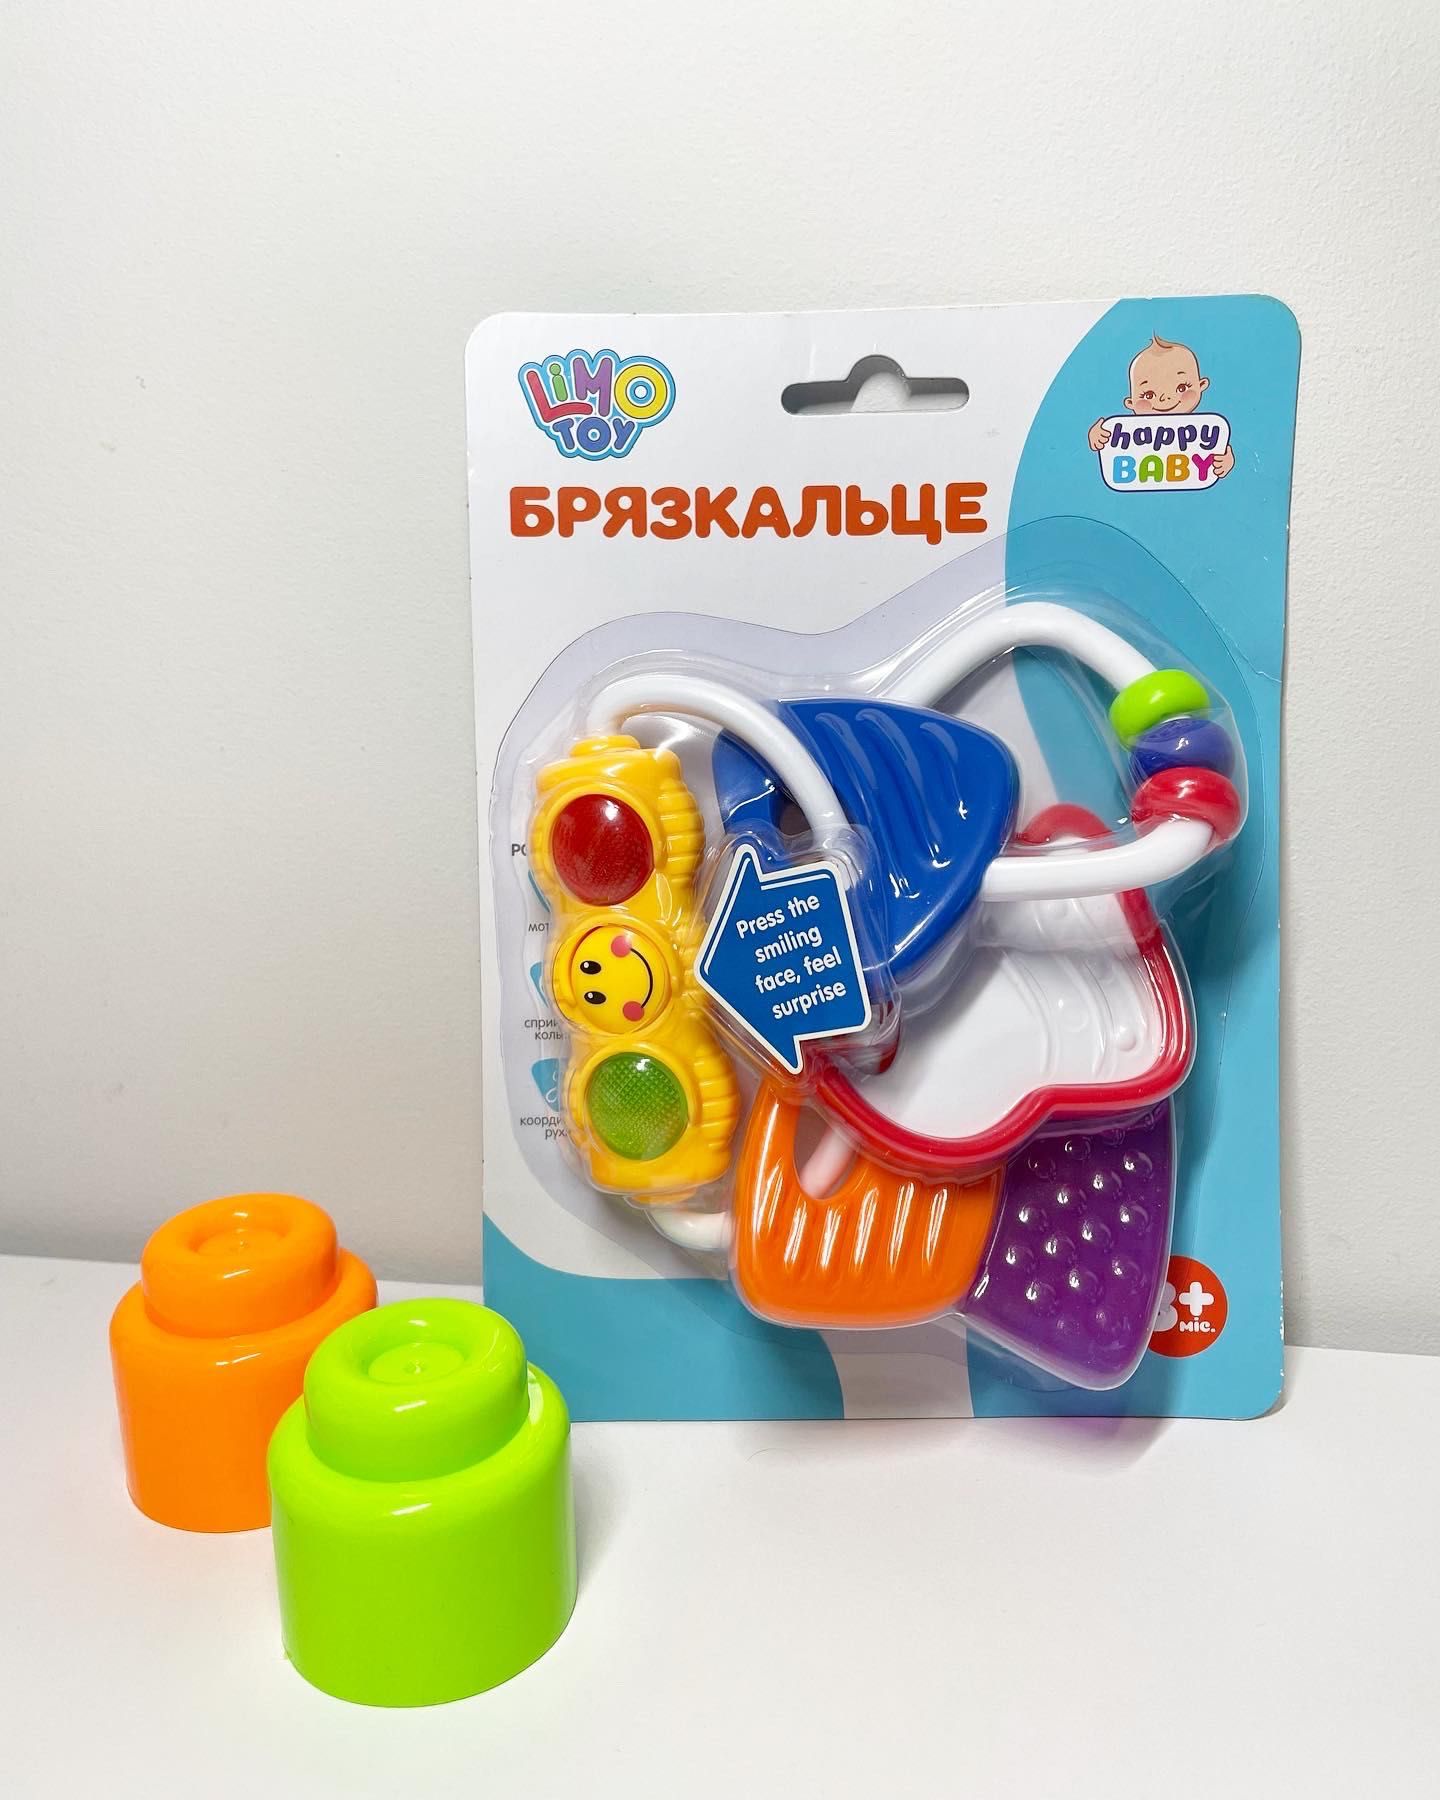 Дитячі іграшки для малюків (брязкальце / пірамідка)